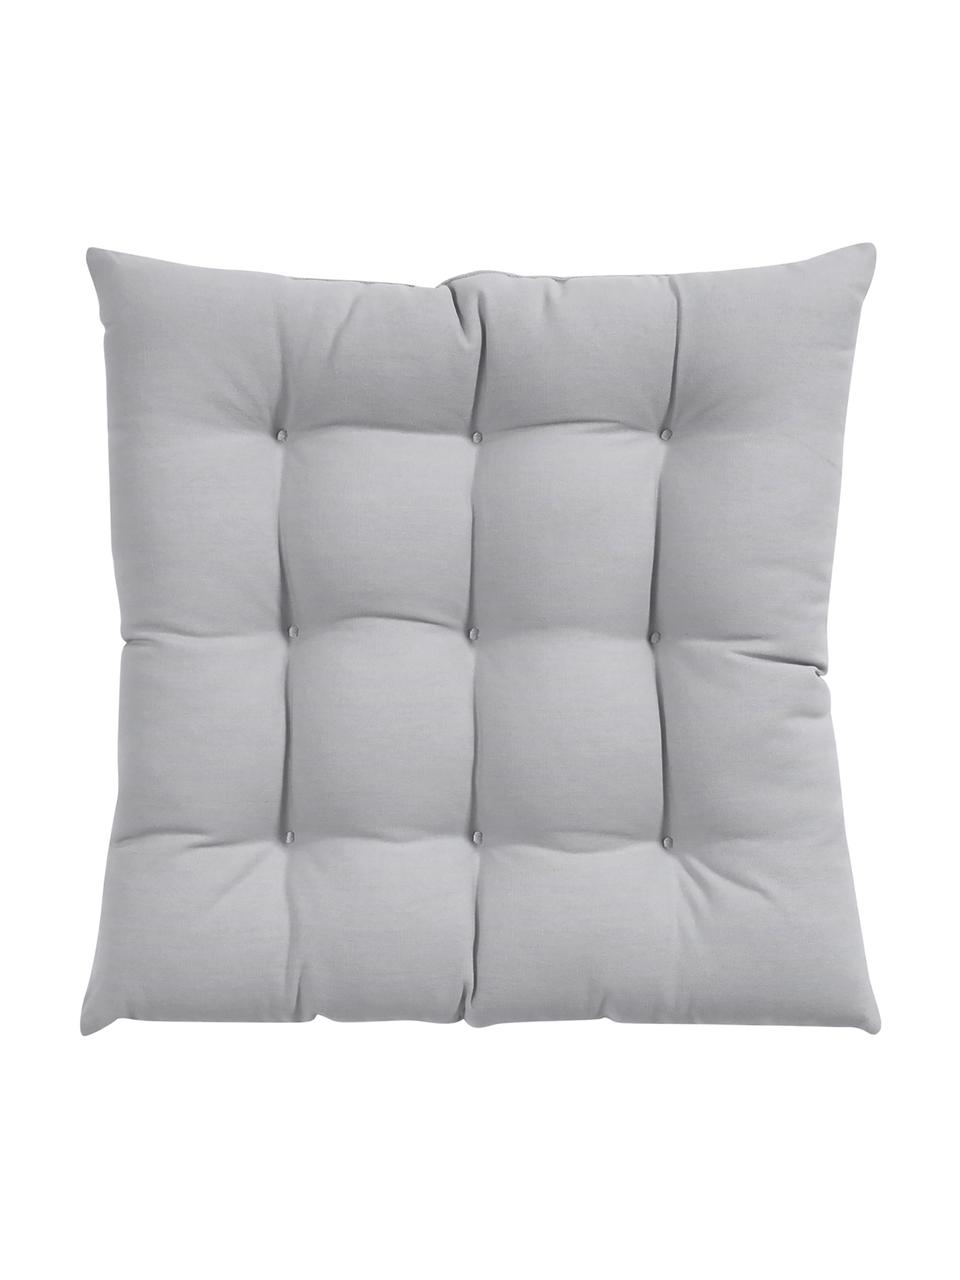 Cuscino sedia in cotone grigio chiaro Ava, Rivestimento: 100% cotone, Grigio chiaro, Larg. 40 x Lung. 40 cm